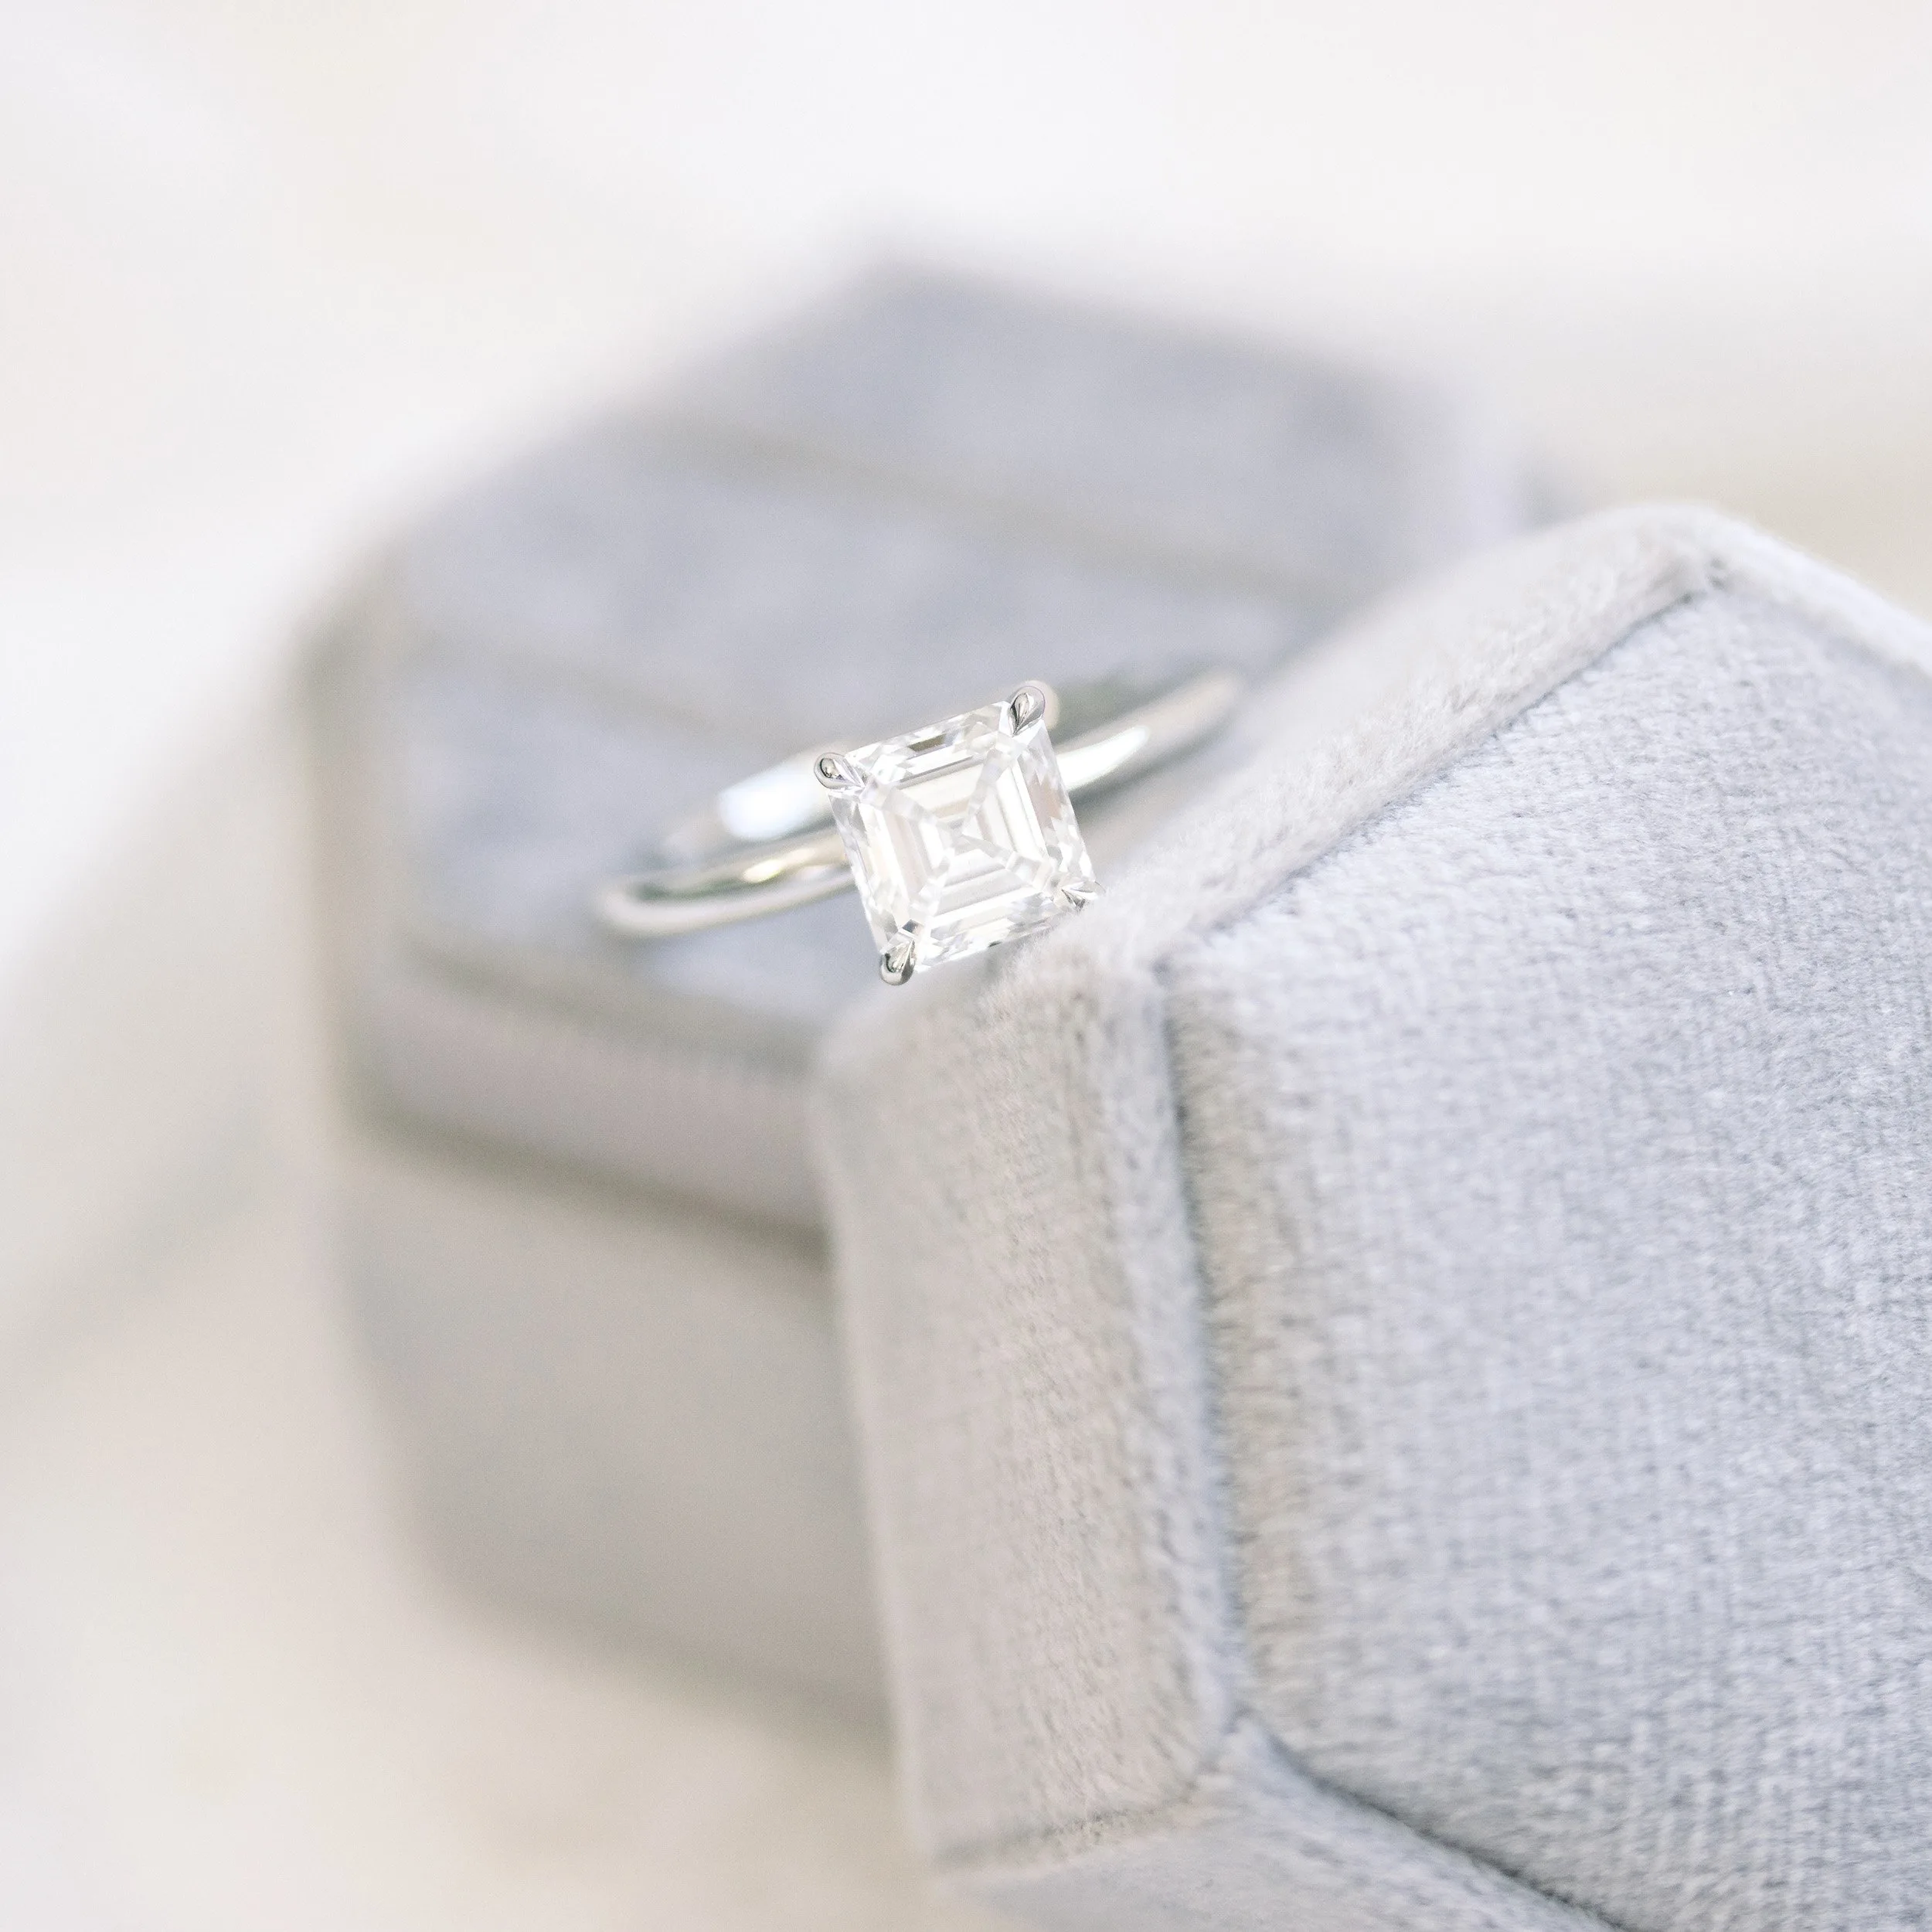 platinum 1.75ct asscher cut lab created diamond solitaire engagement ring ada diamonds design ad234 macro